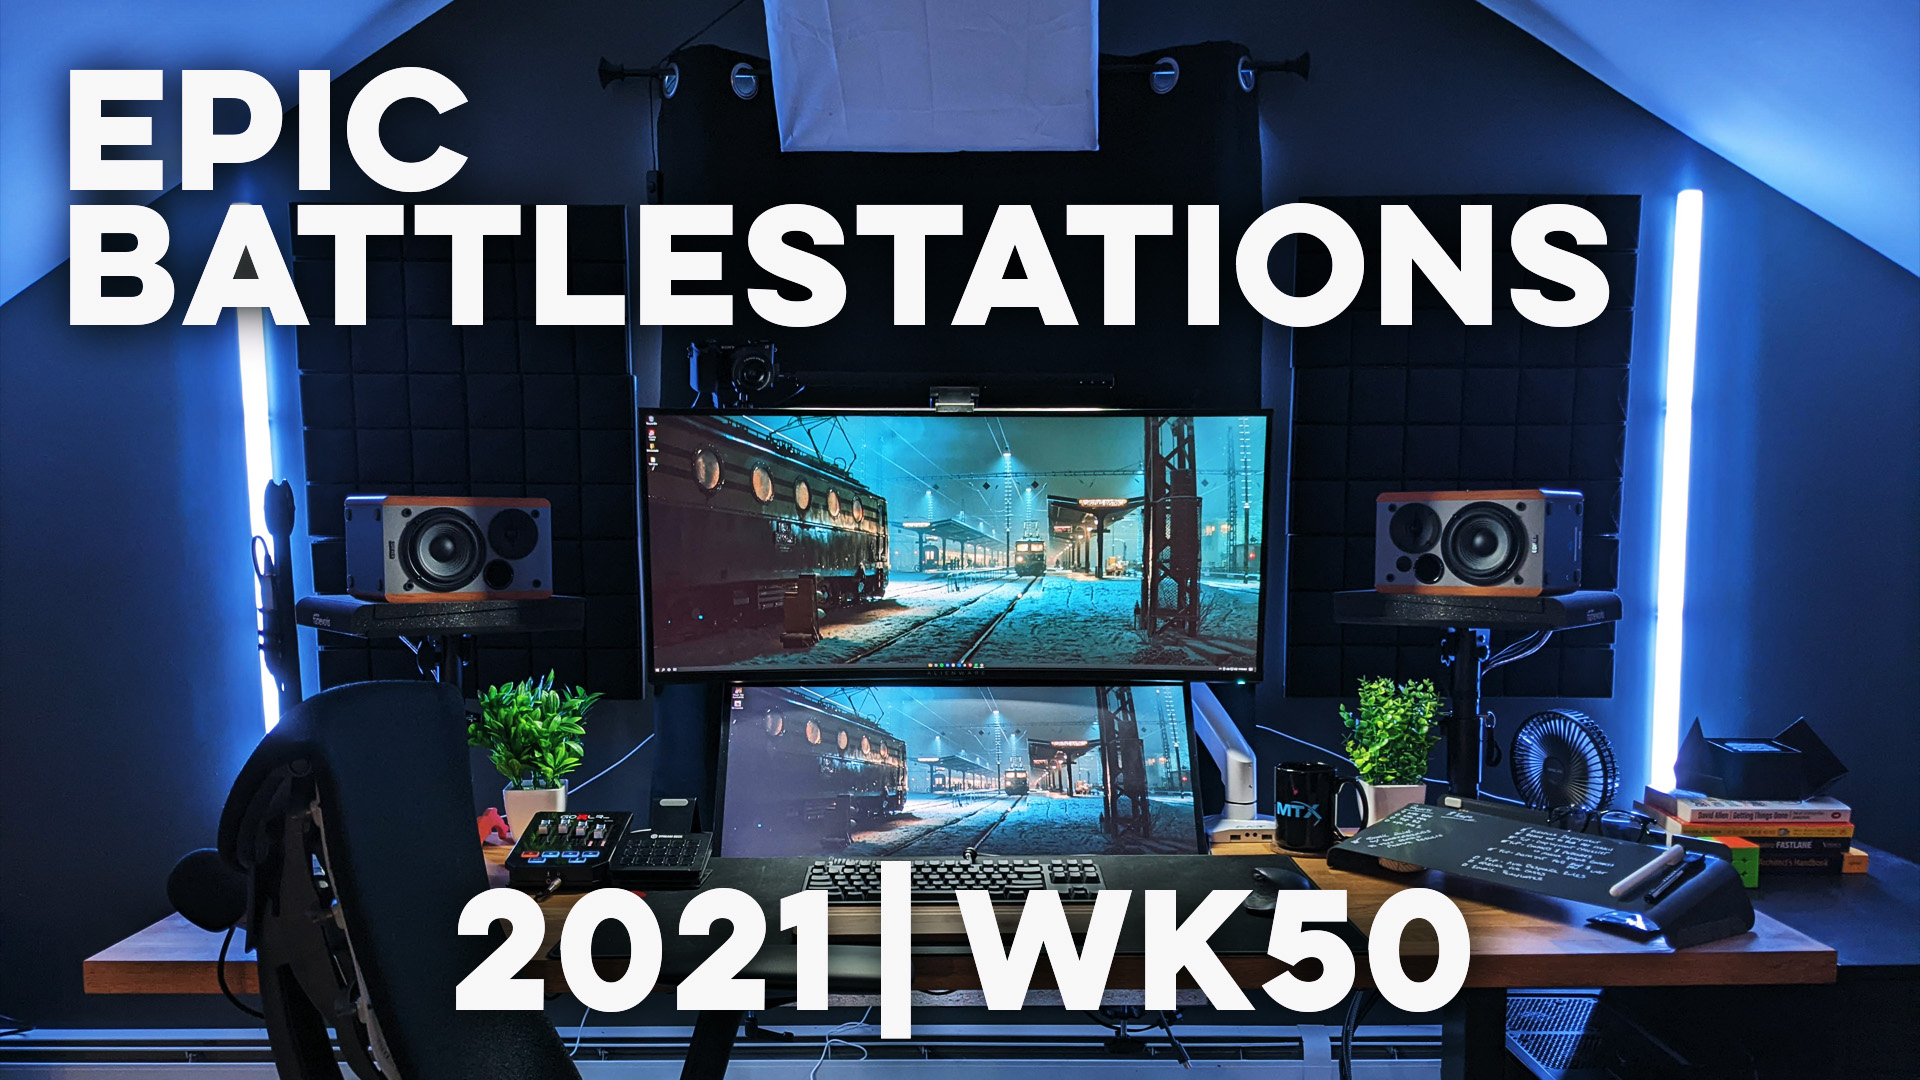 Top 10 EPIC Battlestations for 2021 Week 50!